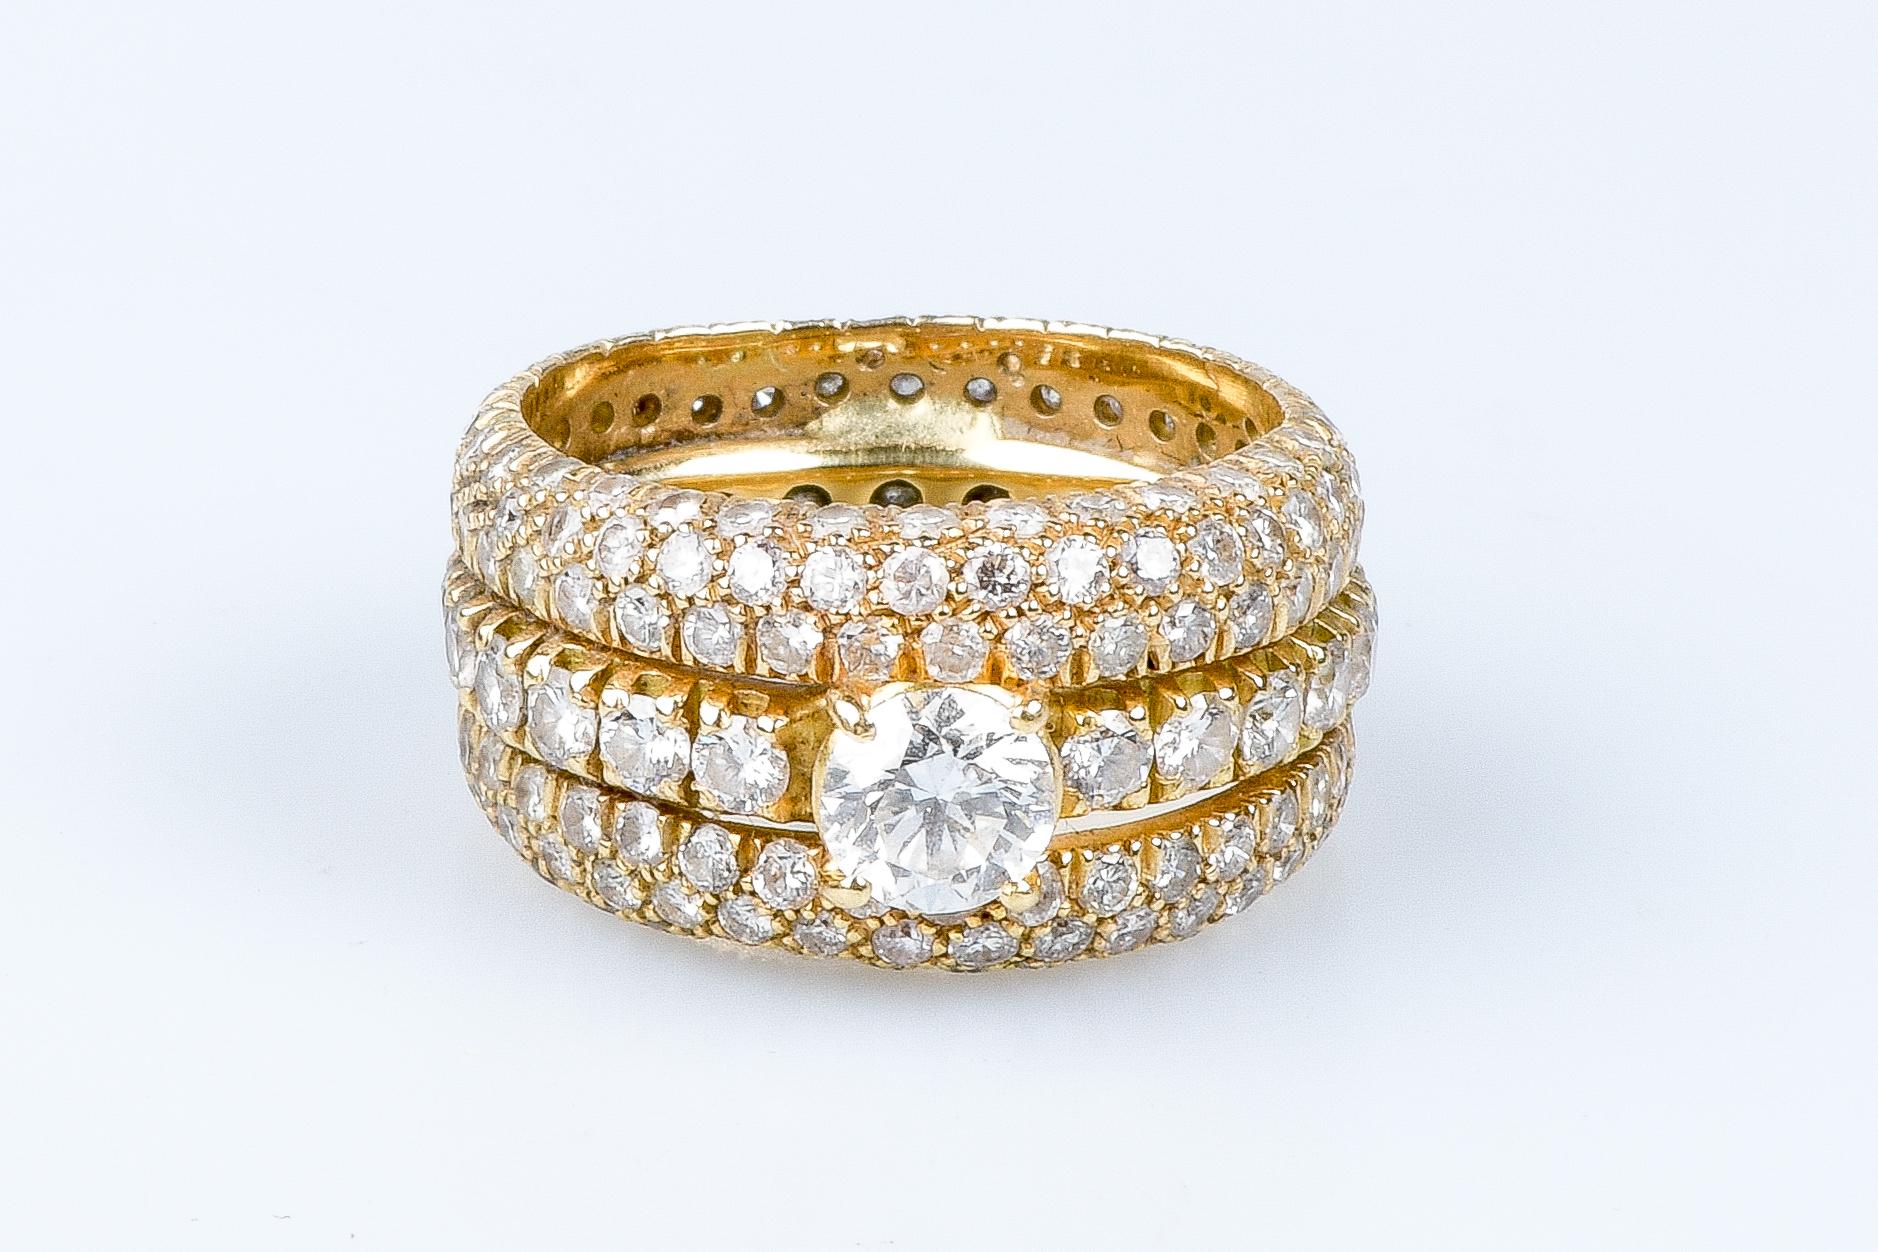 Ring aus 18 Karat Gelbgold mit einem zentralen runden Diamanten im Brillantschliff mit einem Gewicht von 0,73 Karat, umgeben von 20 runden Diamanten im Brillantschliff mit einem Gewicht von 1,24 Karat, von 2 runden Diamanten im Brillantschliff mit